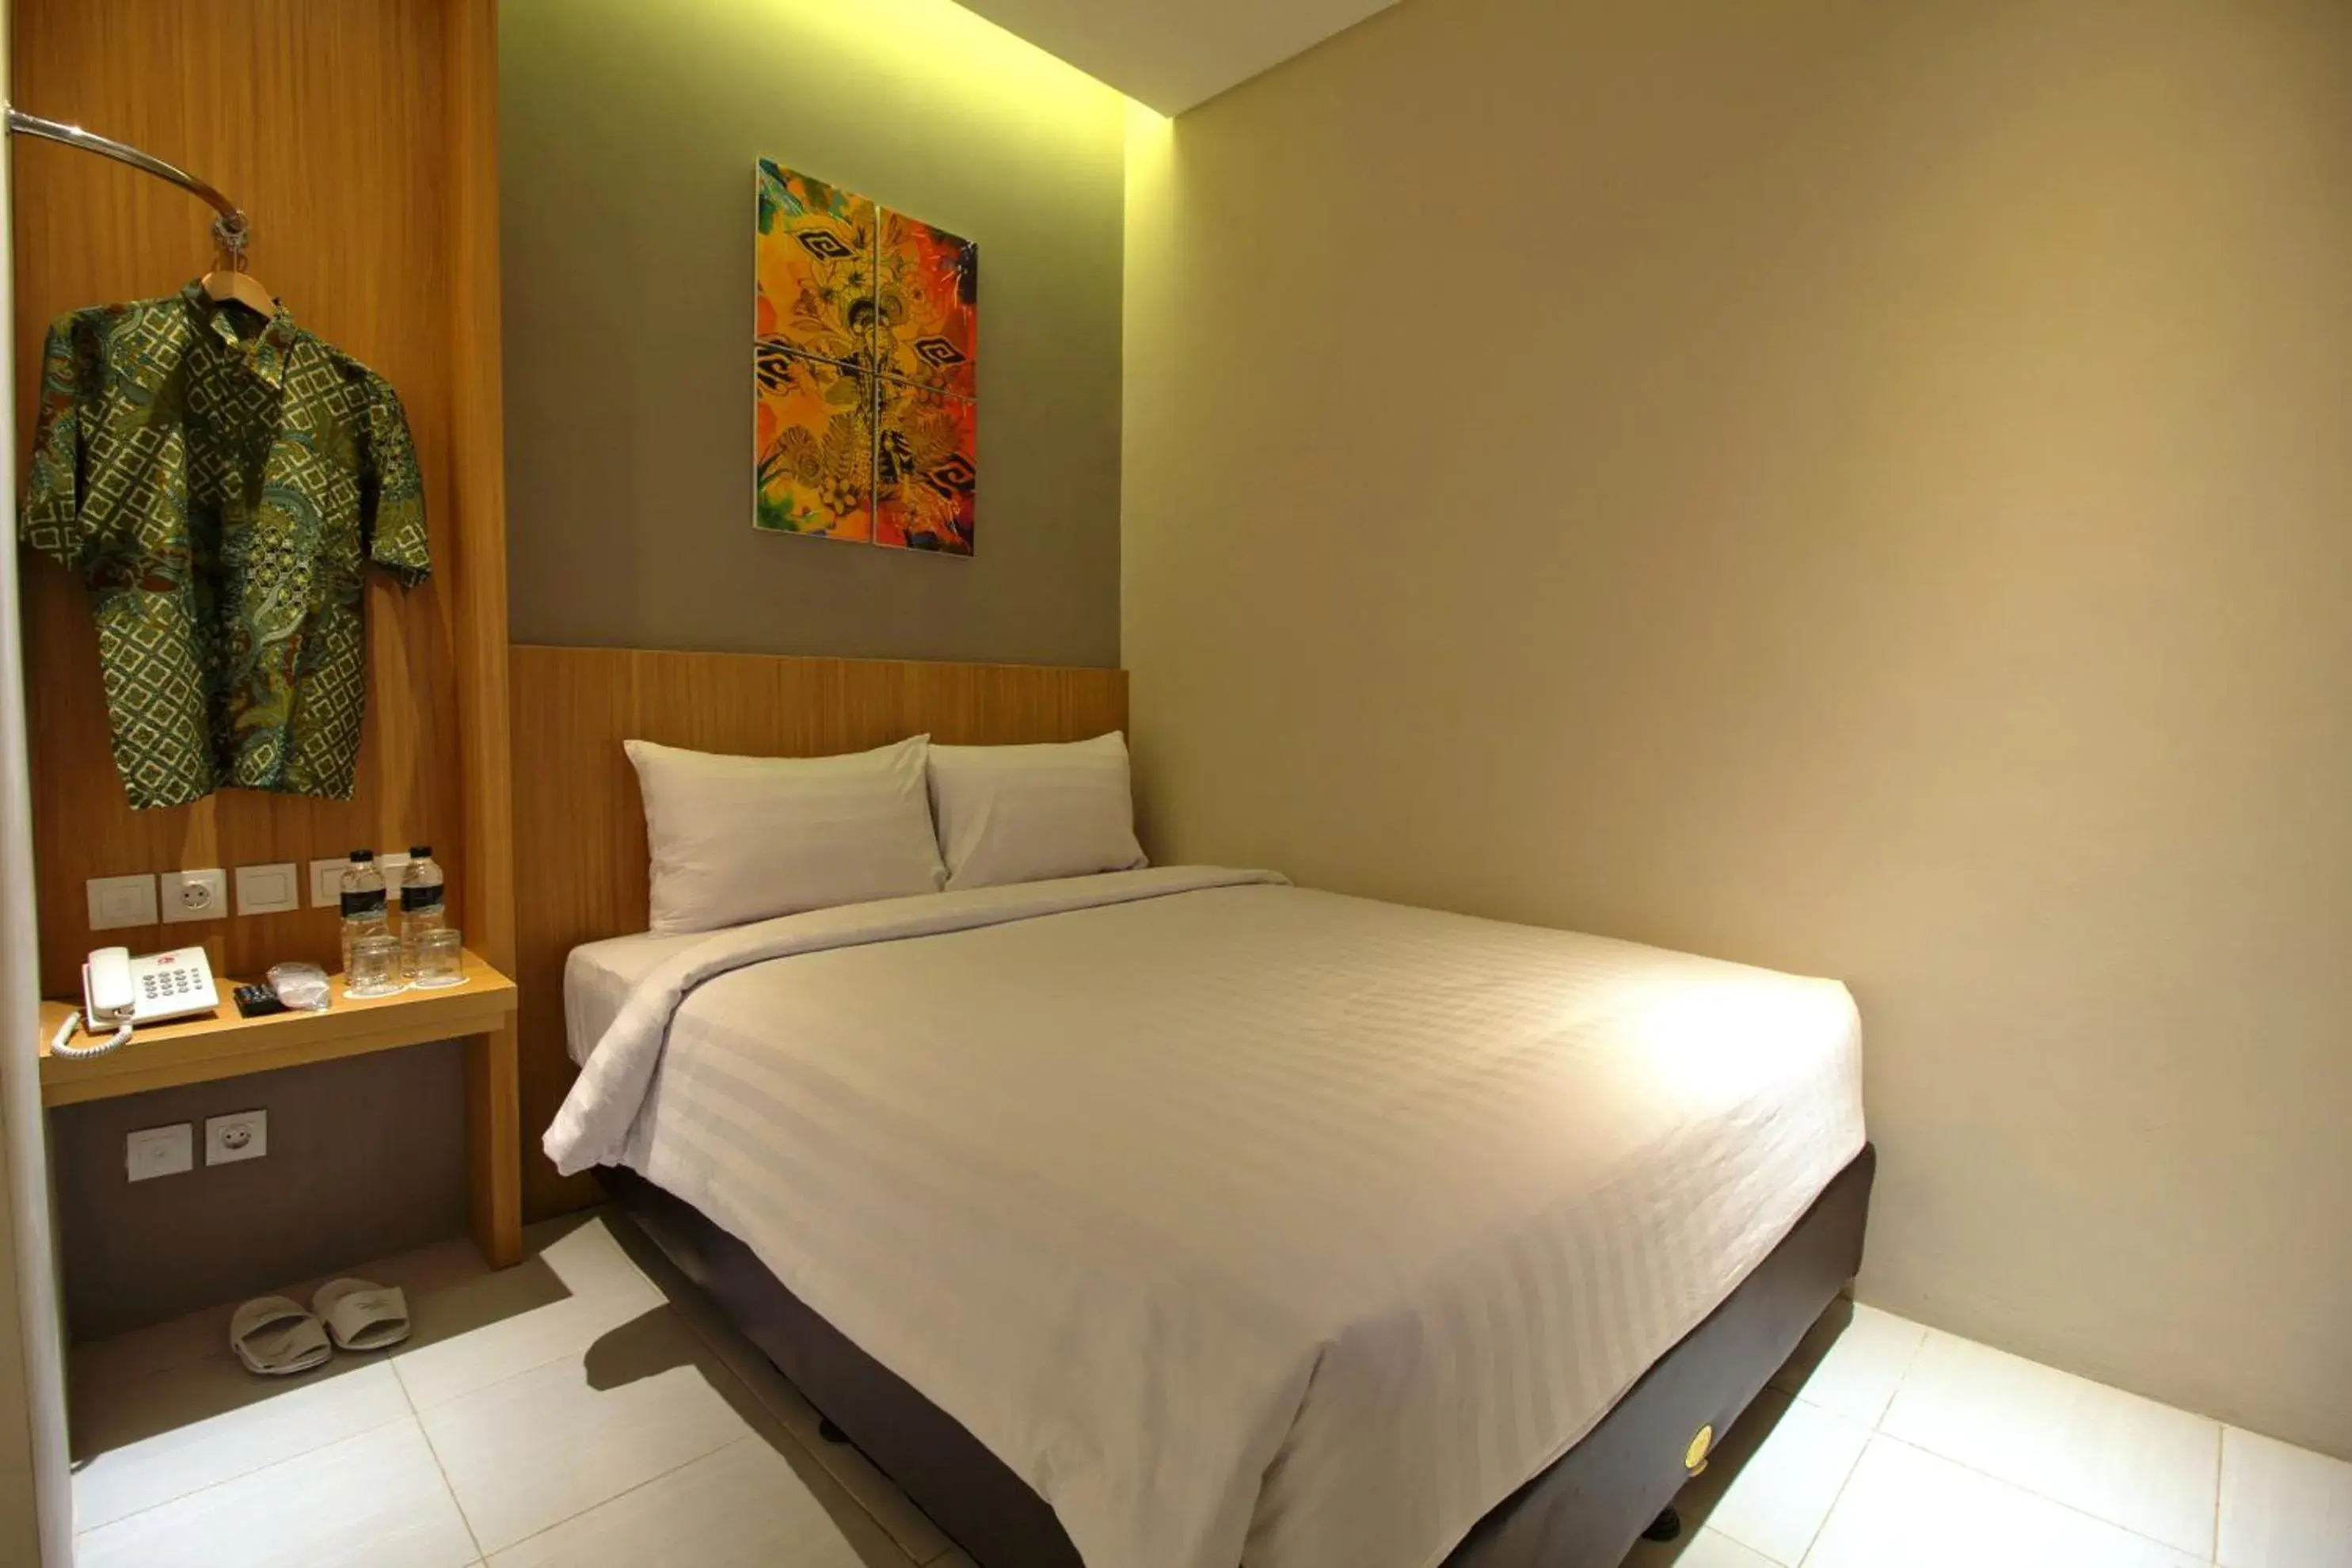 Bedroom, Room Photo in Vinotel Cirebon